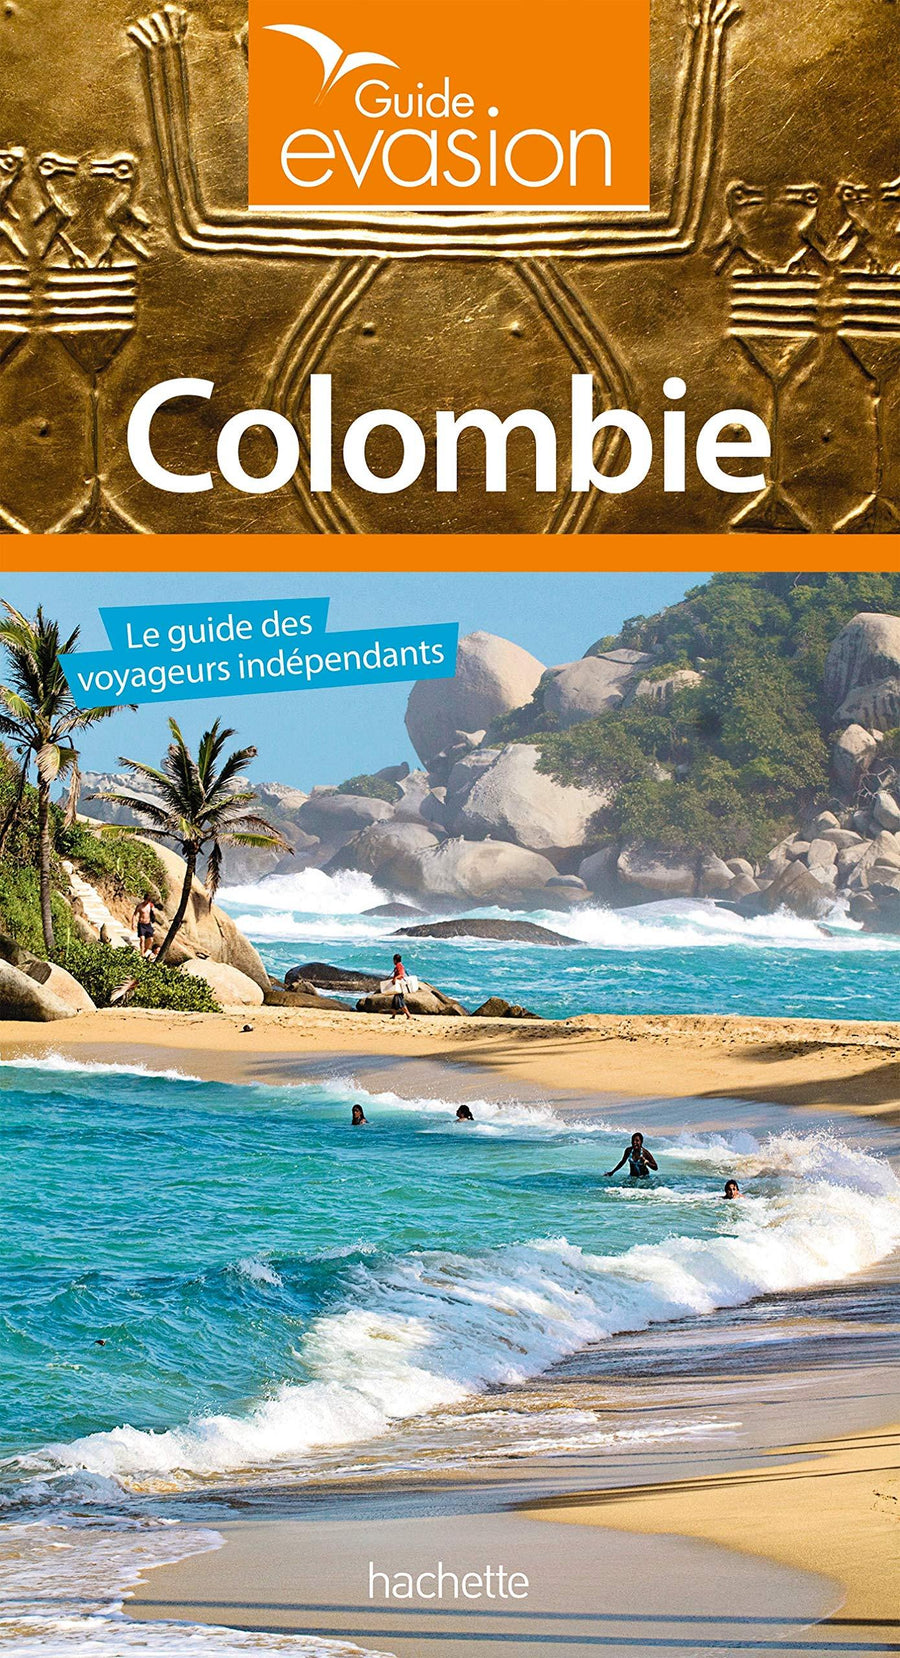 Guide Evasion - Colombie | Hachette guide de voyage Hachette 